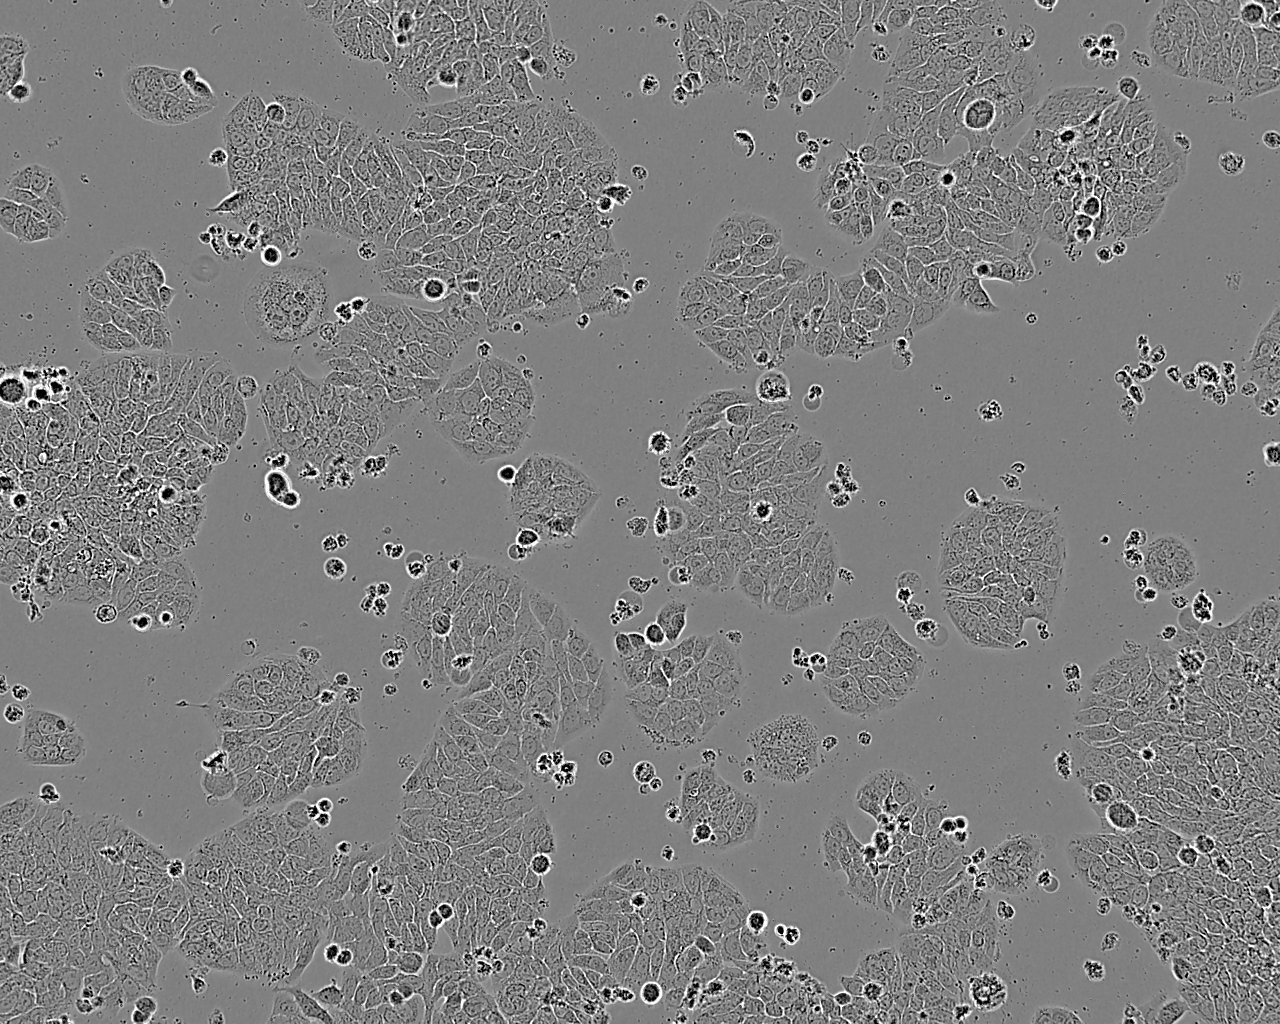 Tu 177 epithelioid cells人喉鳞癌细胞系